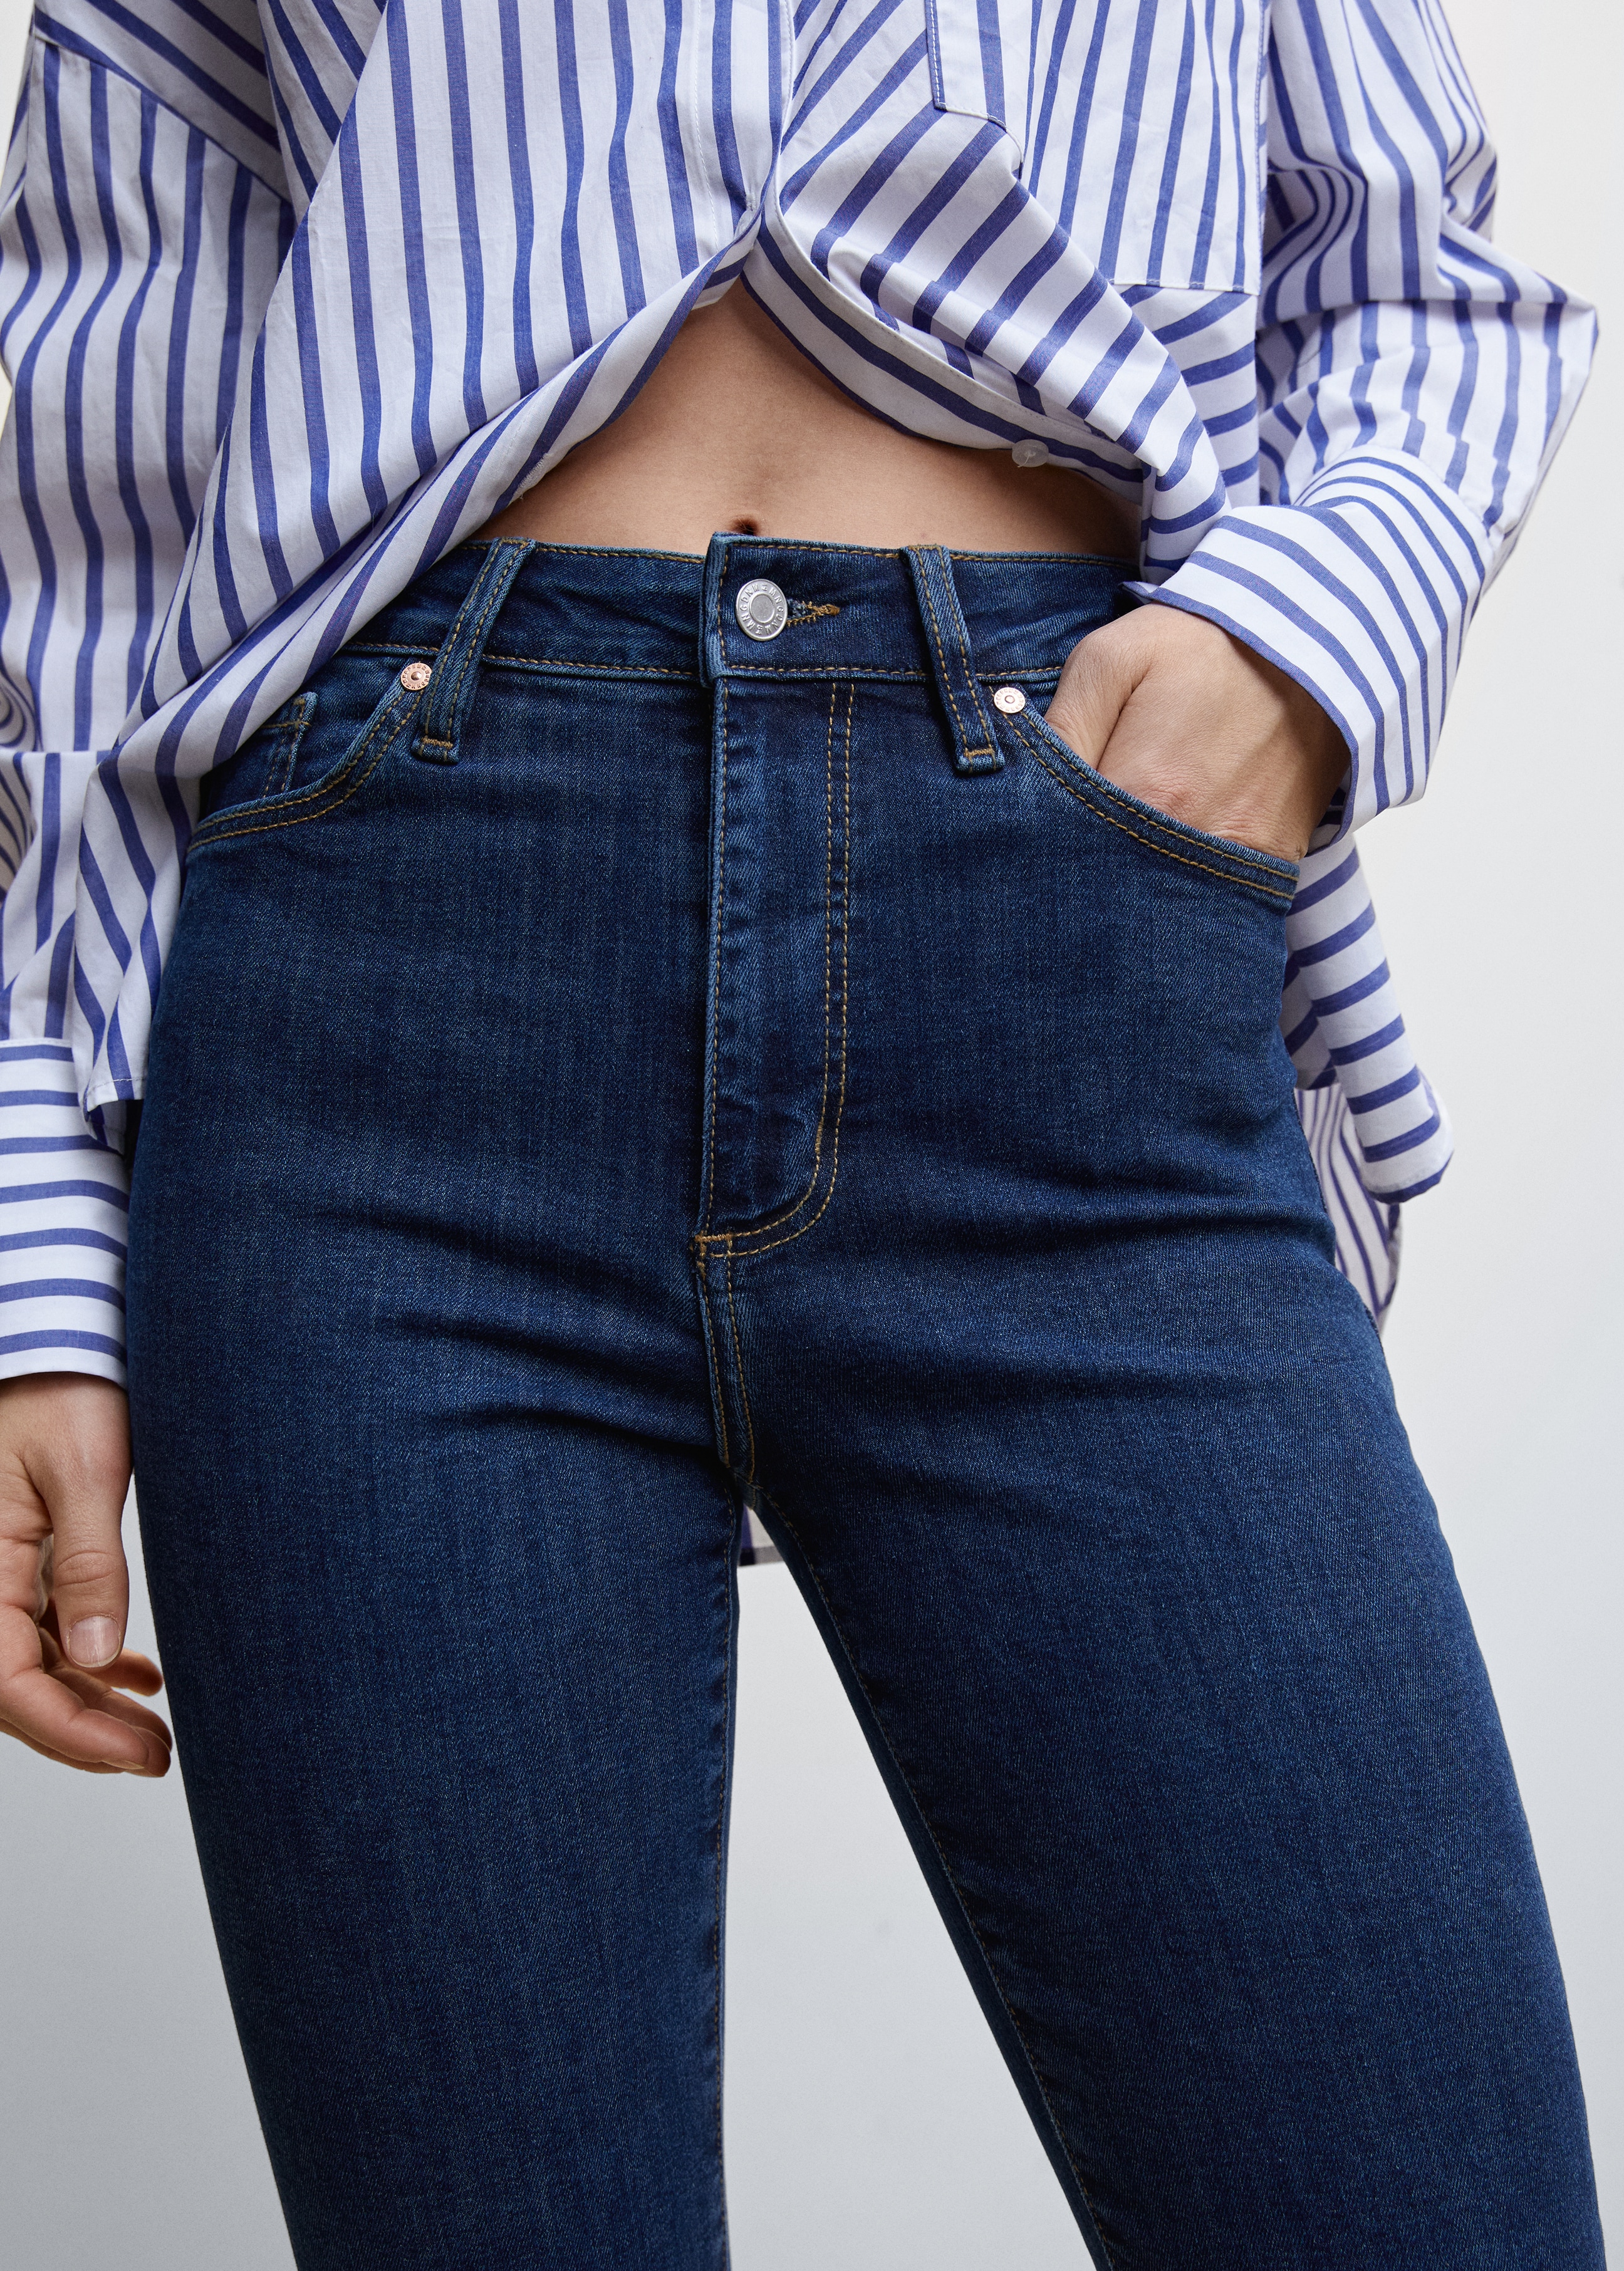 Jeans skinny de cintura alta - Pormenor do artigo 6